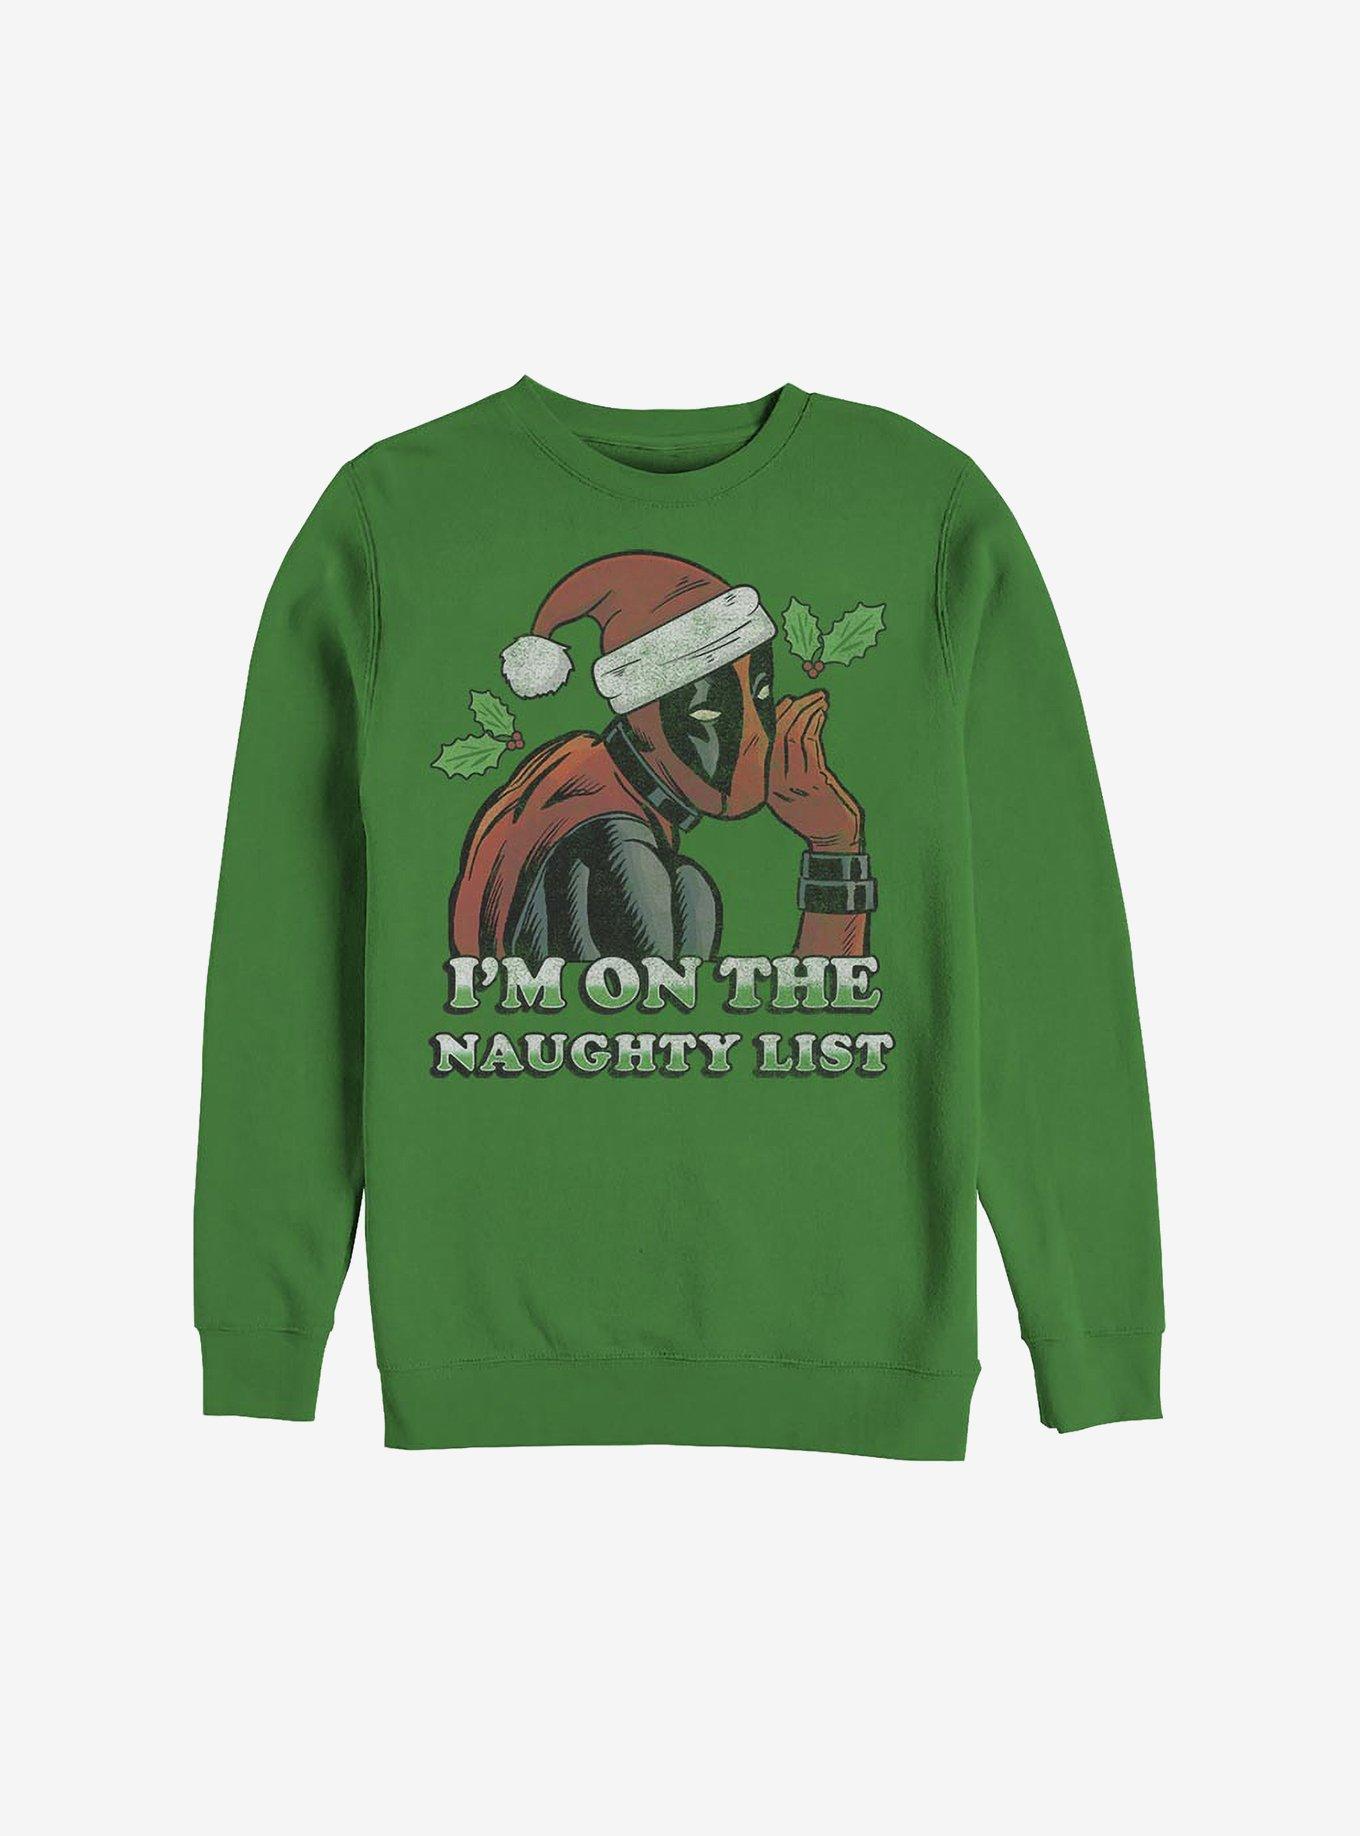 Marvel Deadpool On The Naughty List Holiday Sweatshirt, KELLY, hi-res